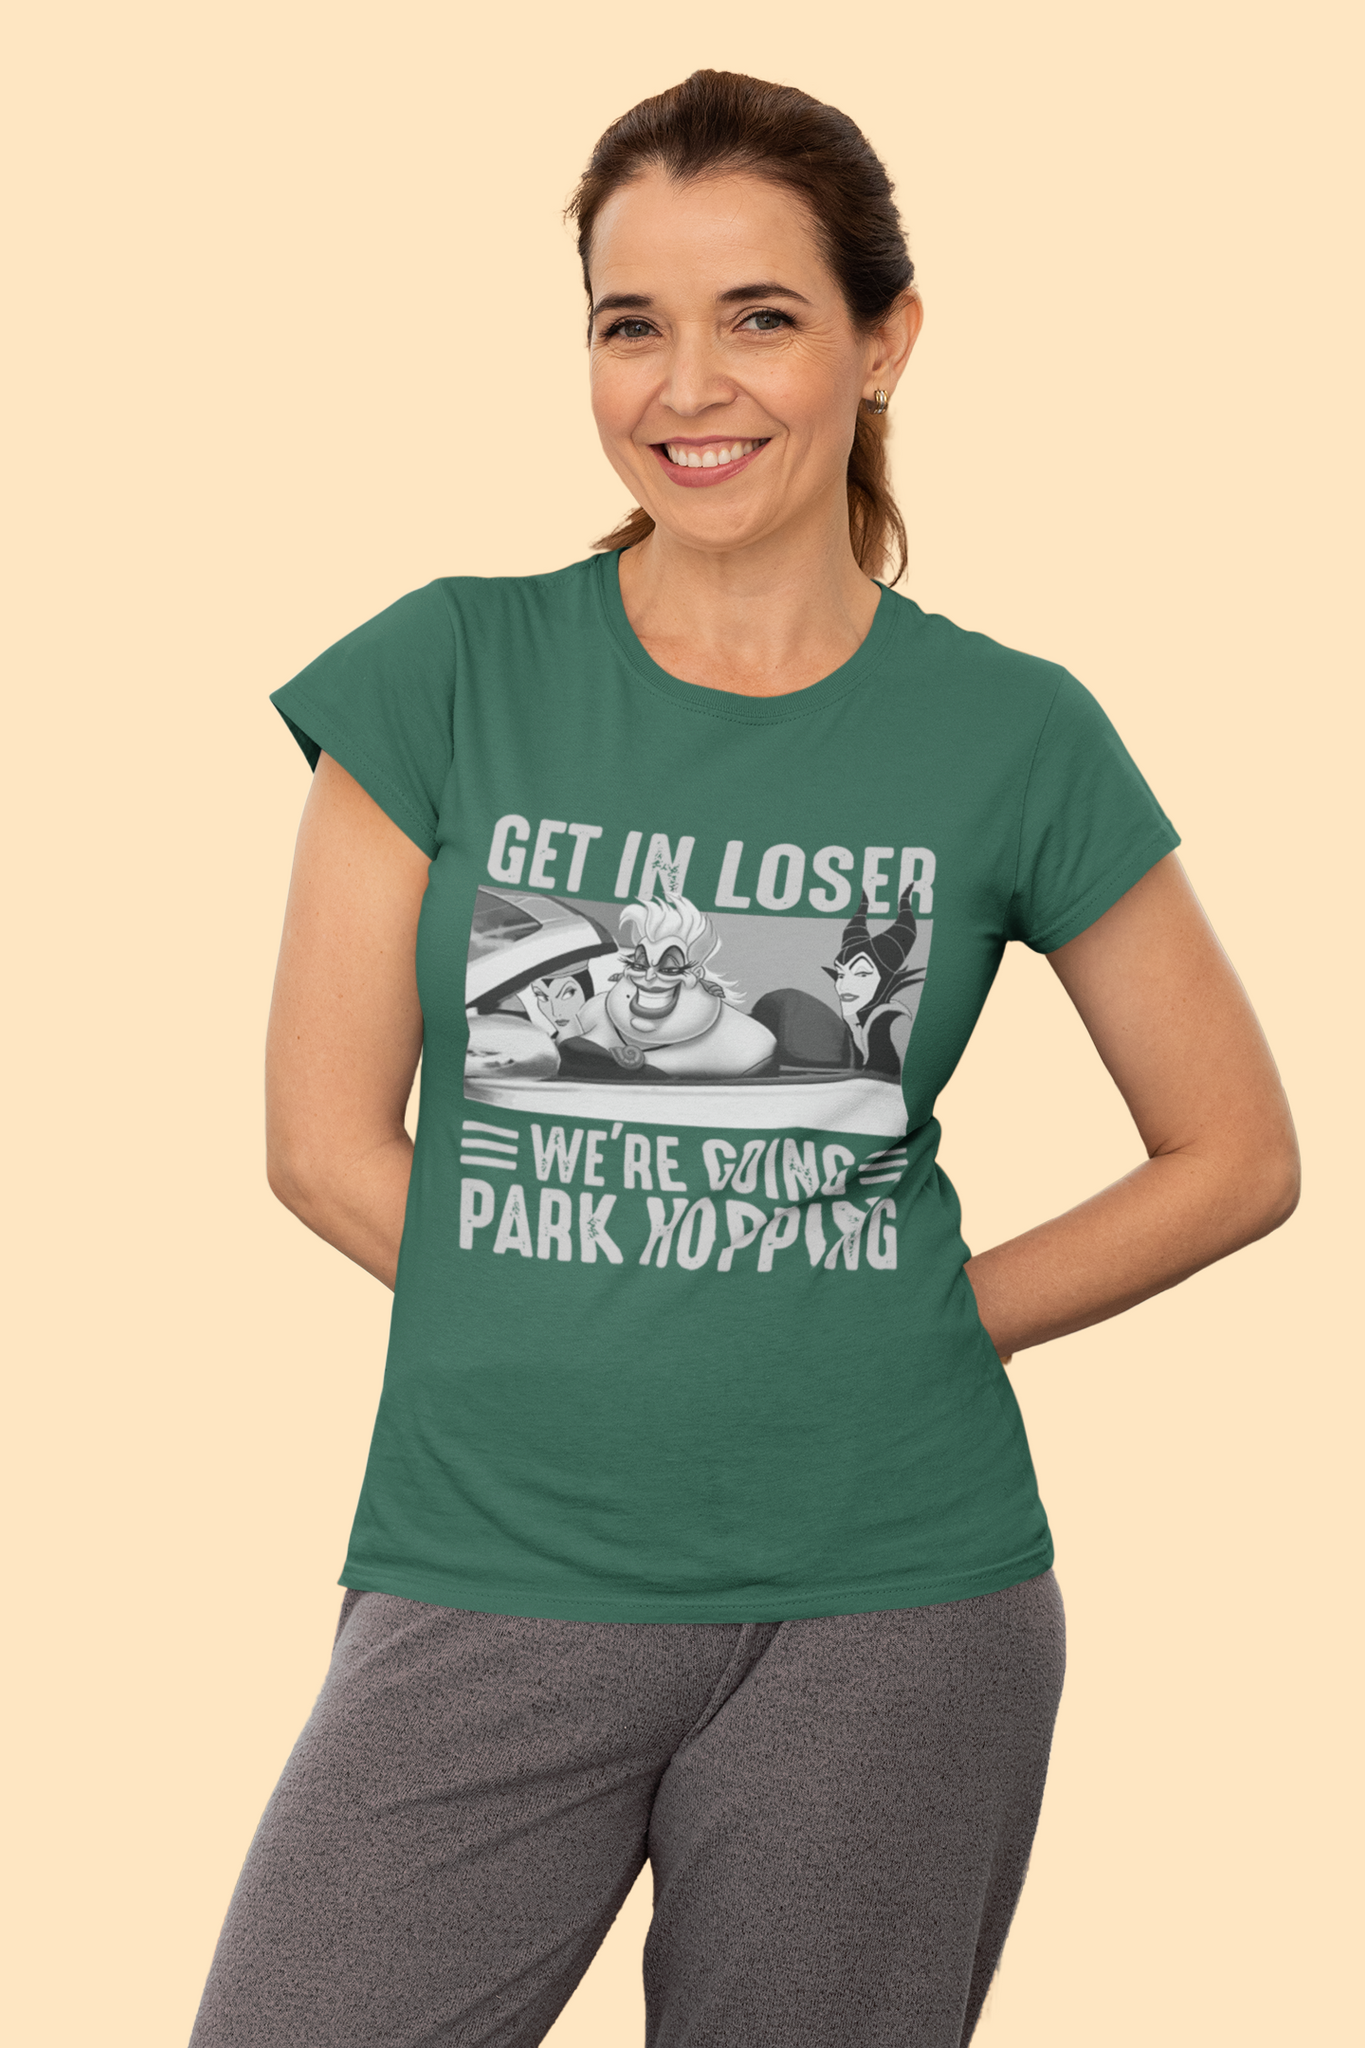 Disney Maleficent T Shirt, The Queen Ursula Maleficent T Shirt, Get In Loser Were Going Park Hopping Tshirt, Disney Villains Shirt